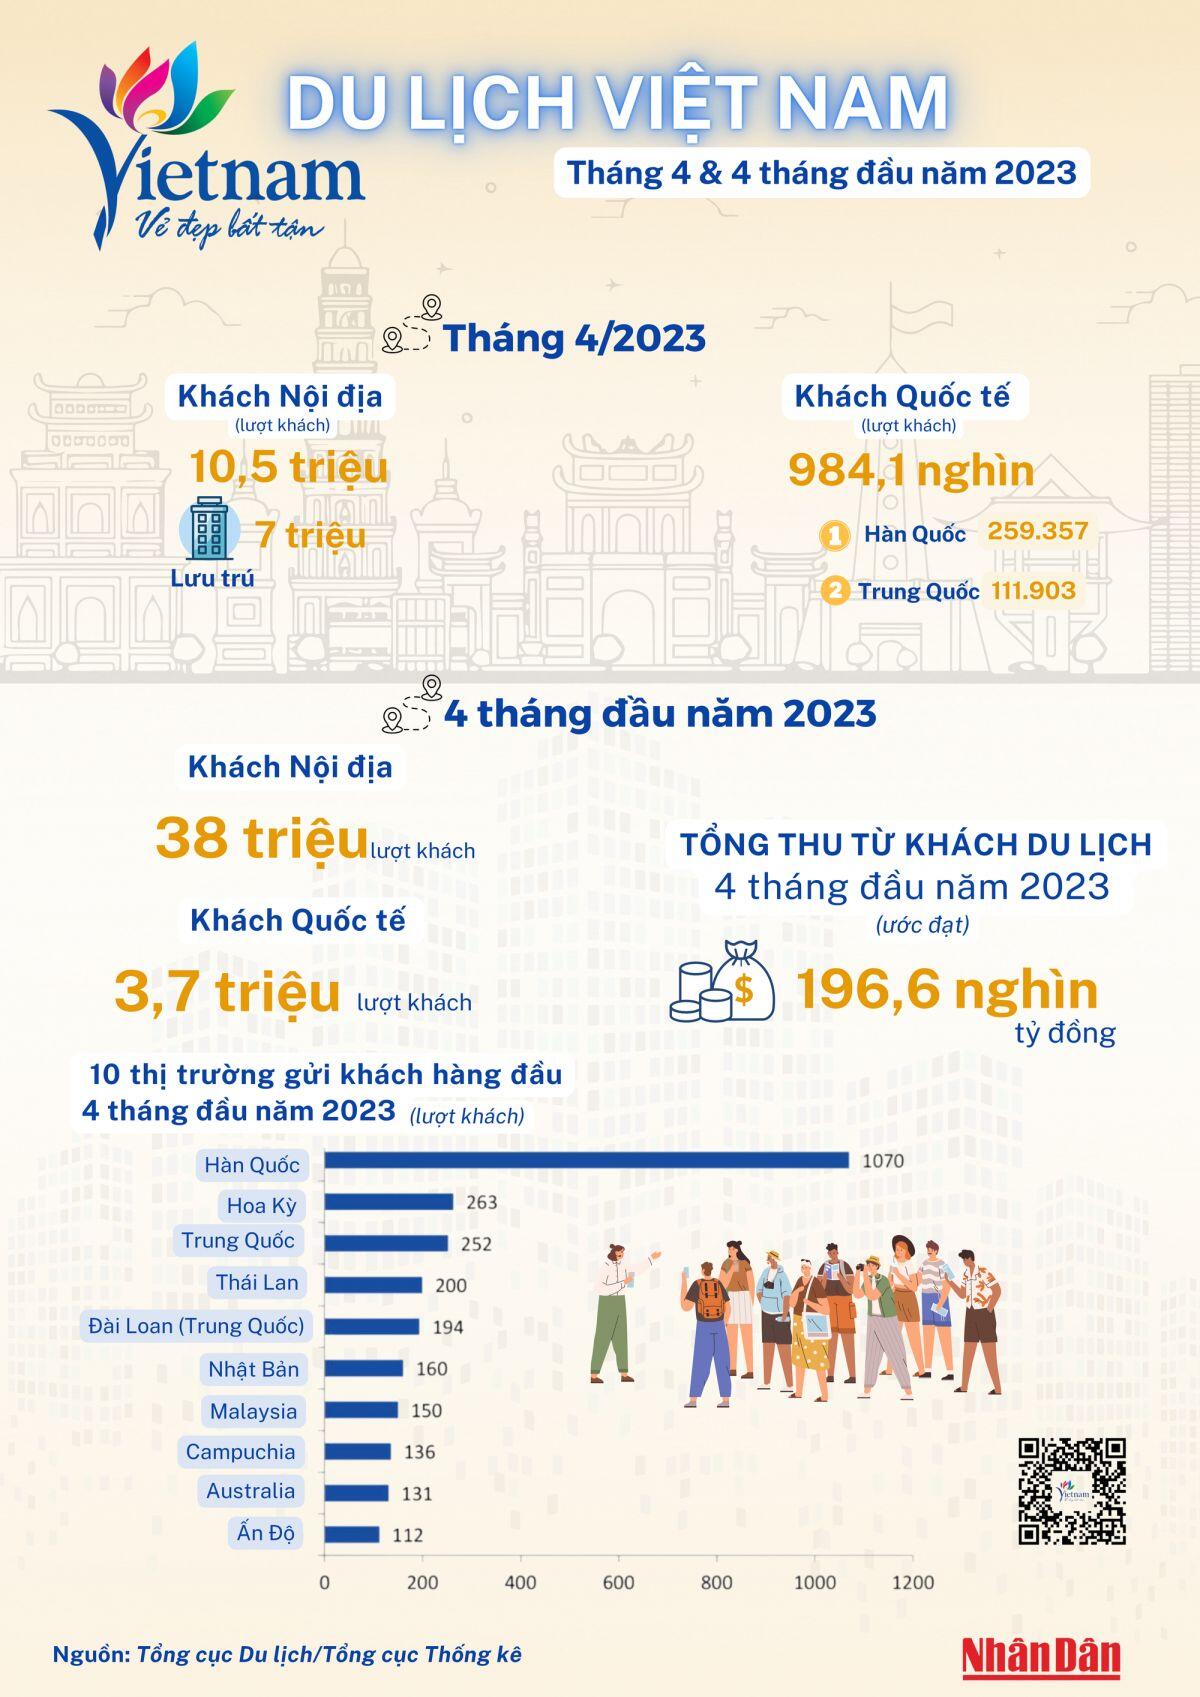 Du lịch Việt Nam có khả năng vượt mục tiêu đón 8 triệu khách quốc tế